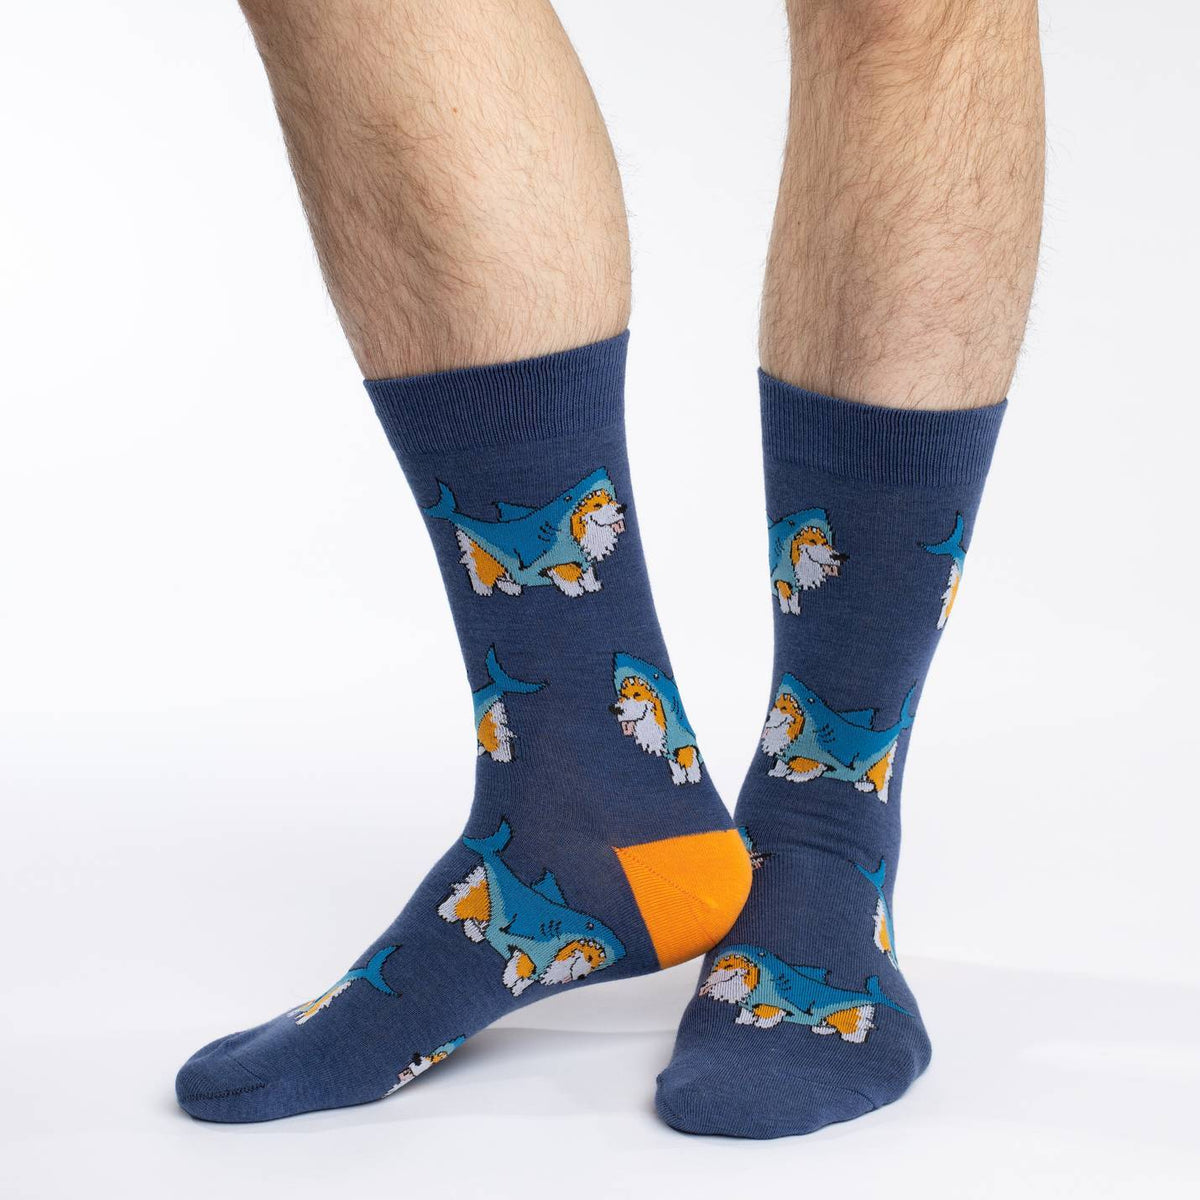 Men's Corgi Sharks Socks – Good Luck Sock